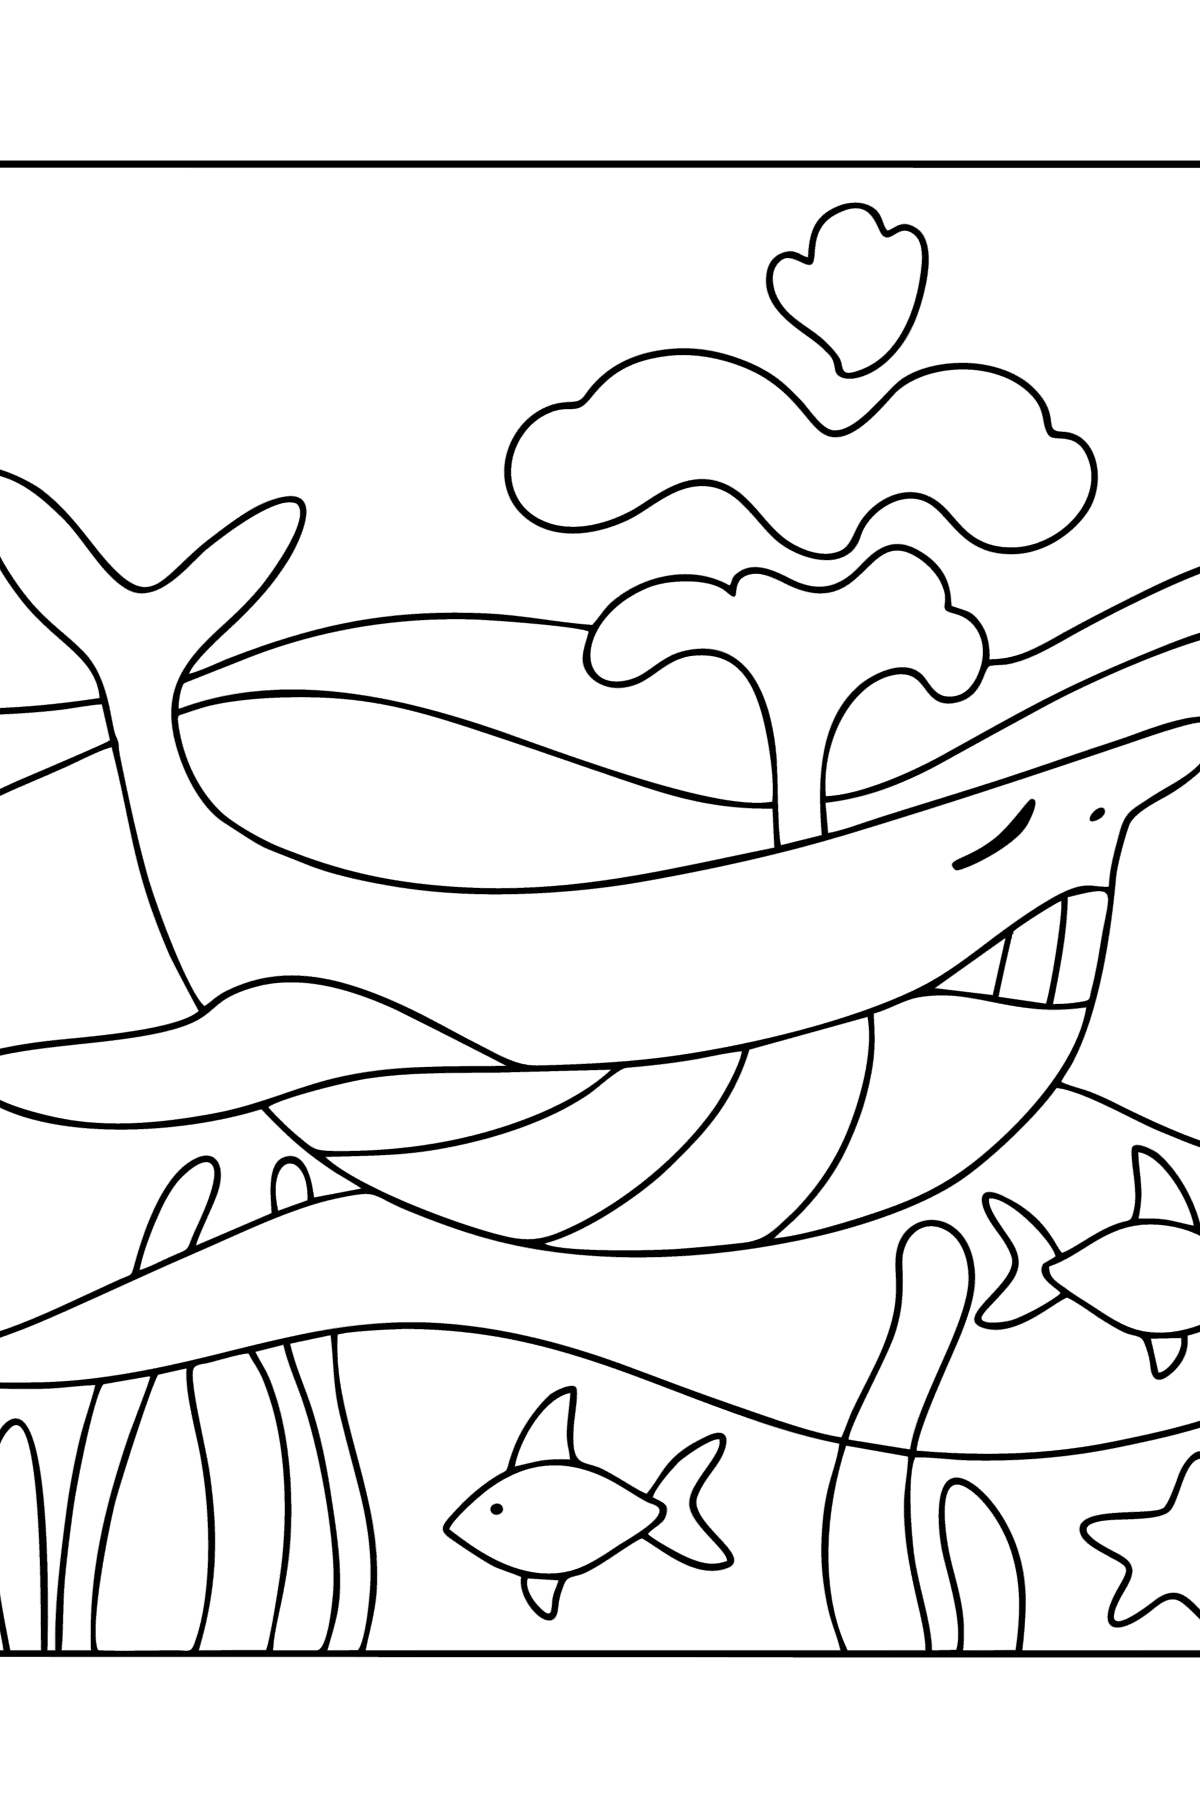 Desenho de Cachalote fofo para colorir - Imagens para Colorir para Crianças